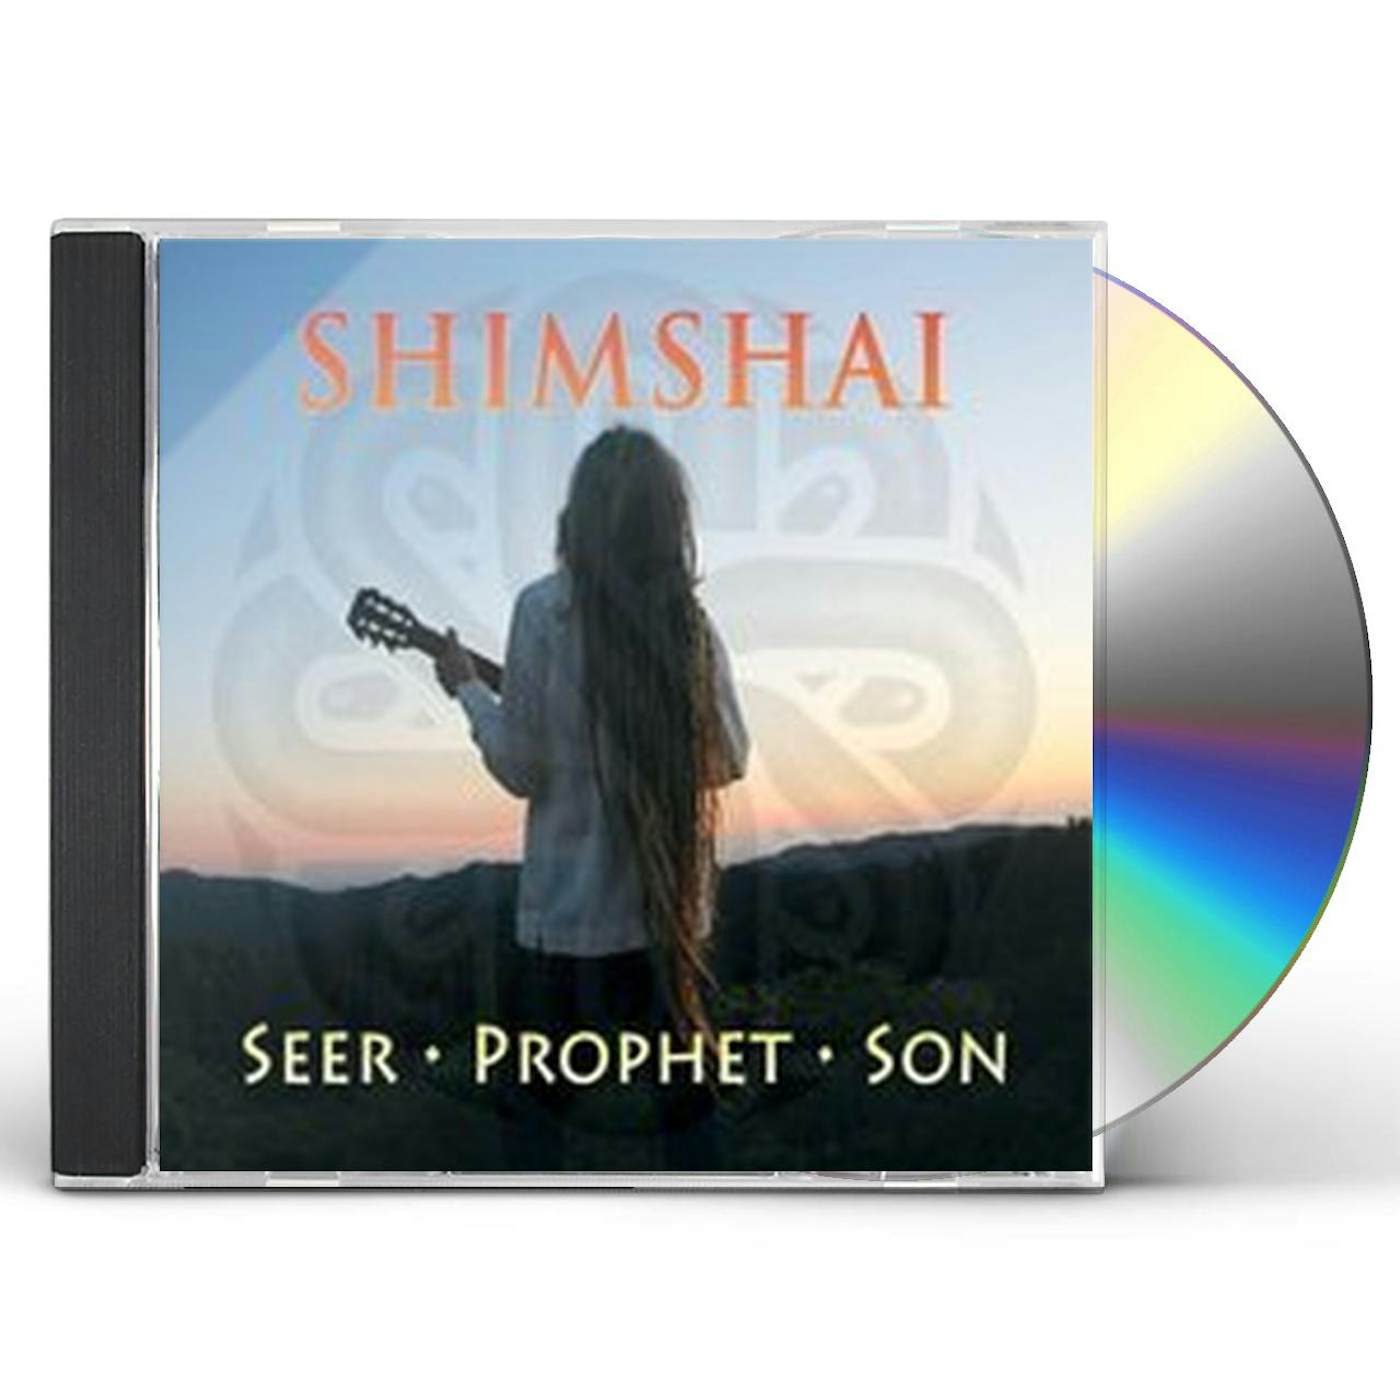 Shimshai SEER PROPHET SON CD